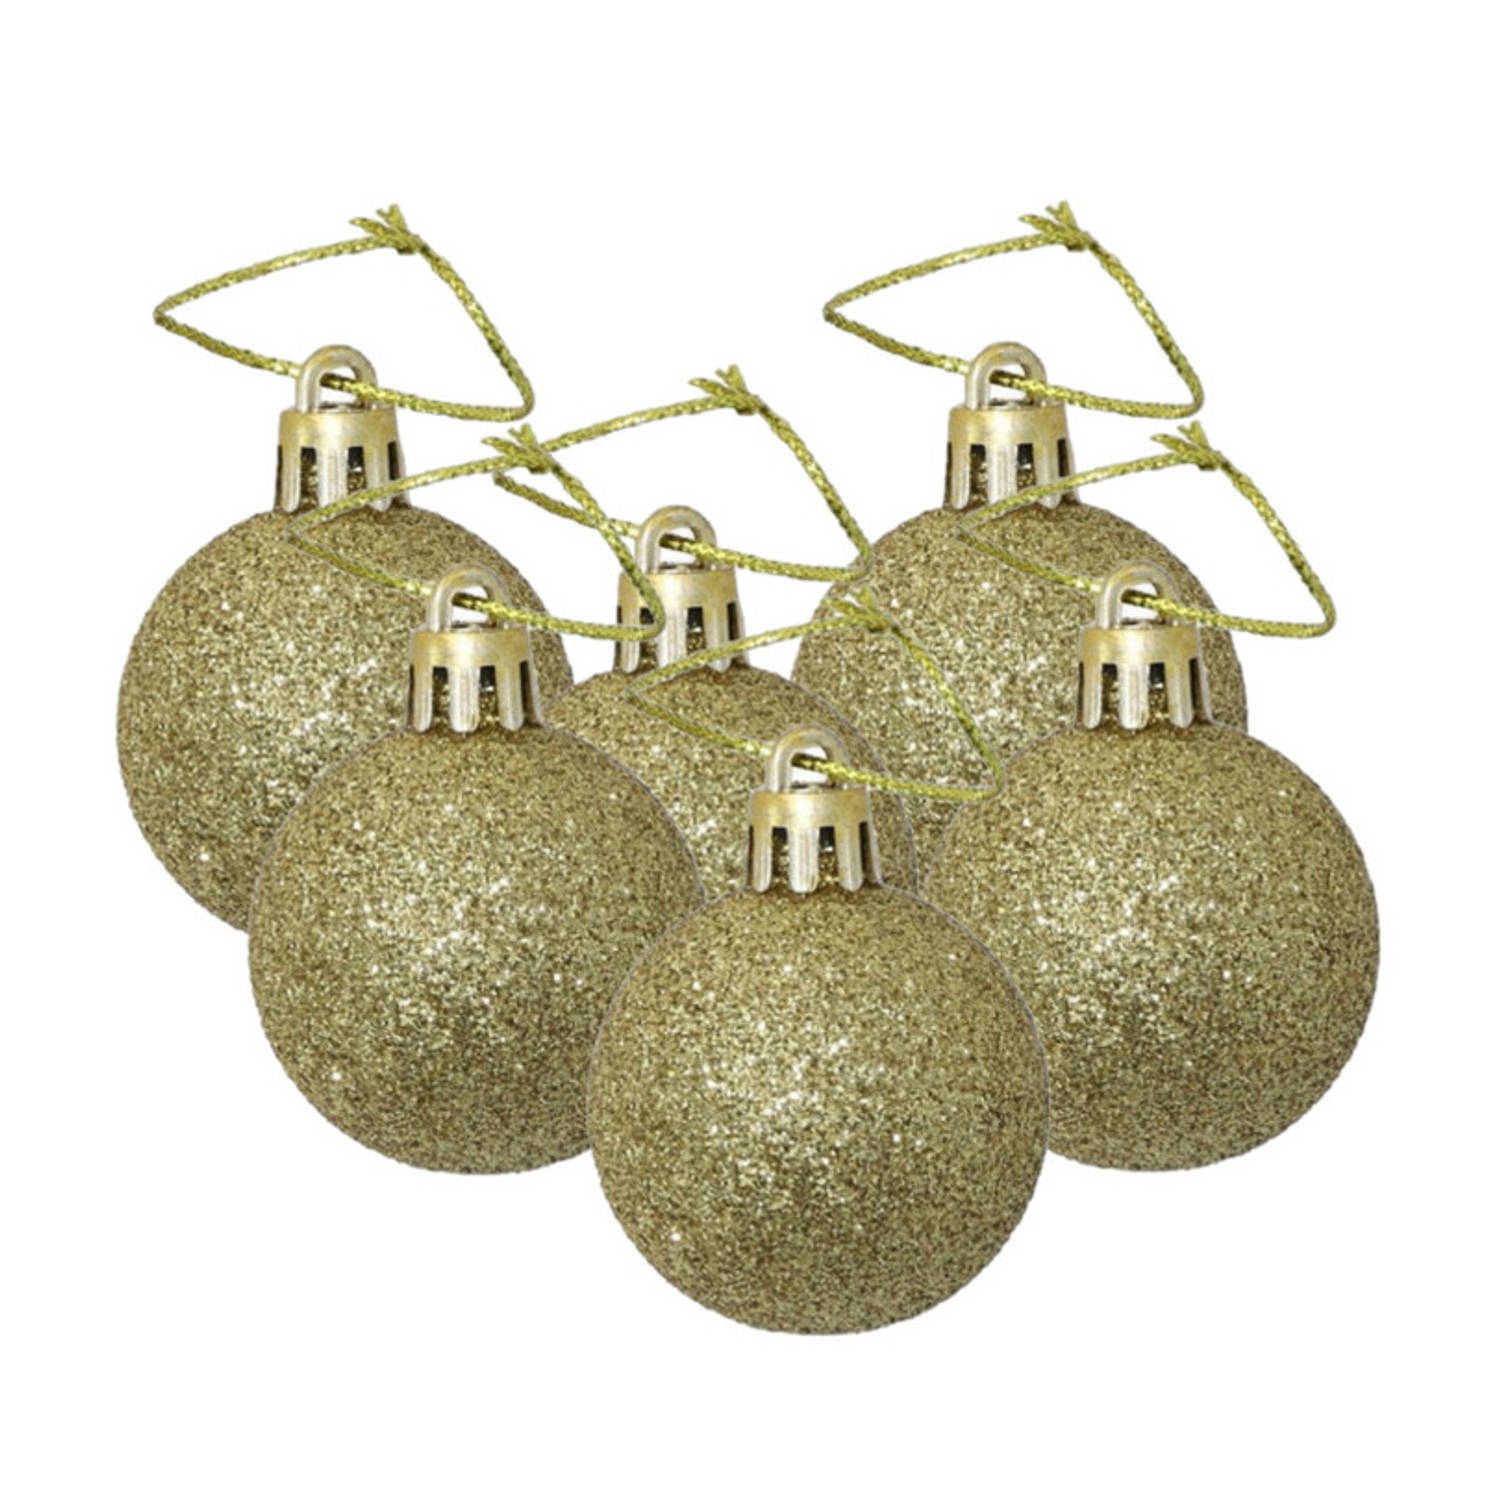 Kerstballen - 6x st - goud - glitters - 4 cm - kunststof - Kerstbal